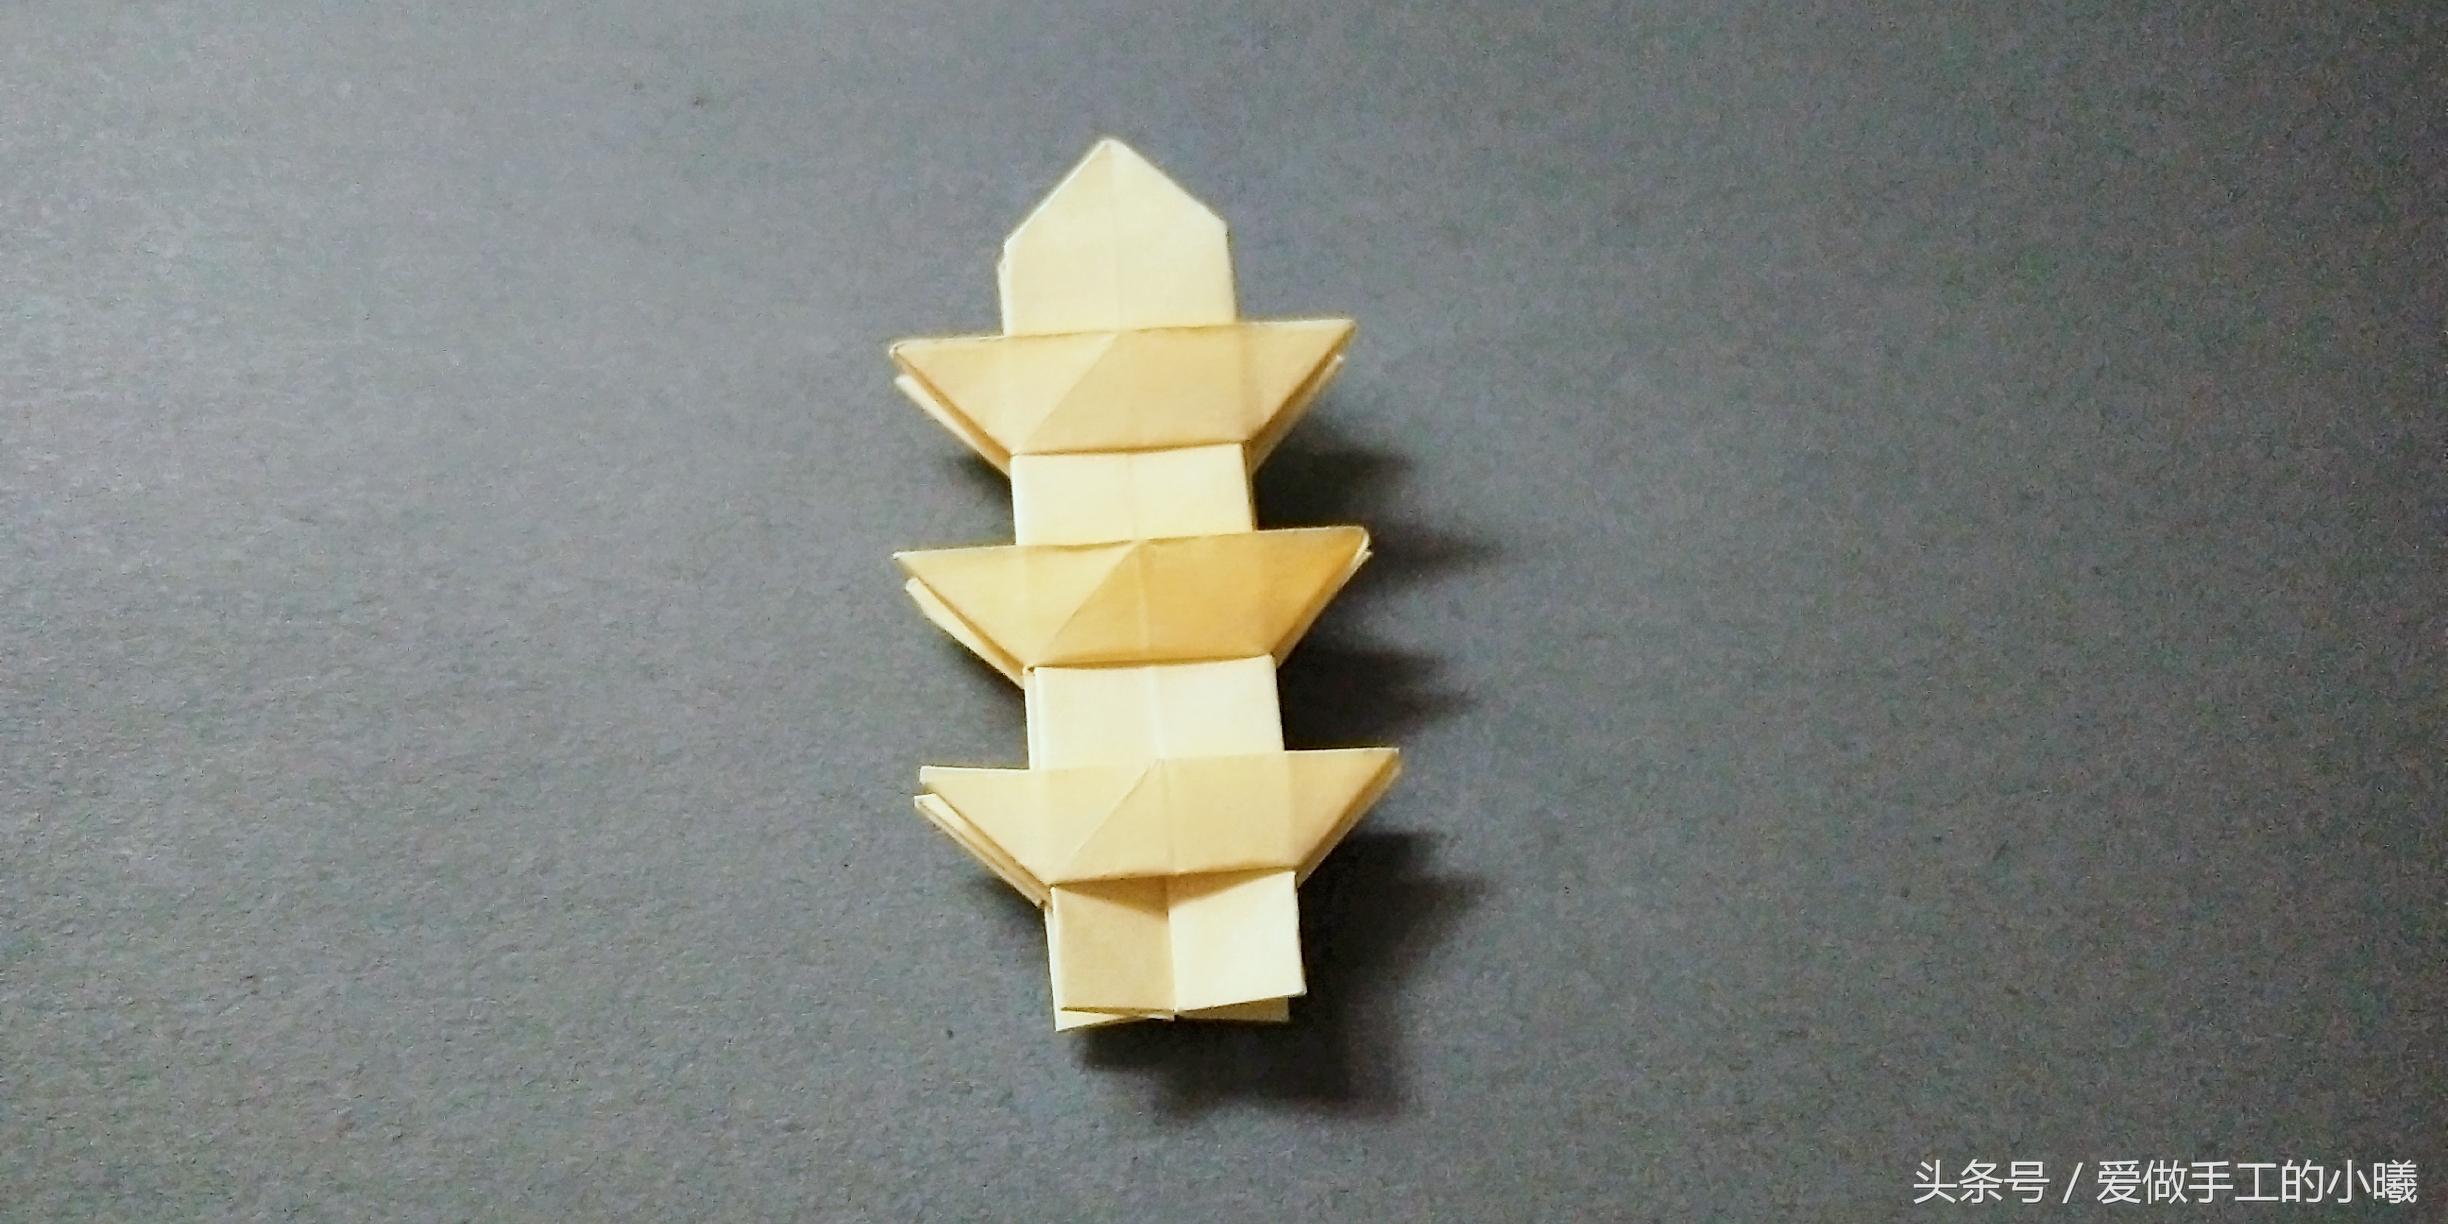 宝塔的折叠方法,宝塔简单折法(儿童趣味系列折纸:宝塔折纸)